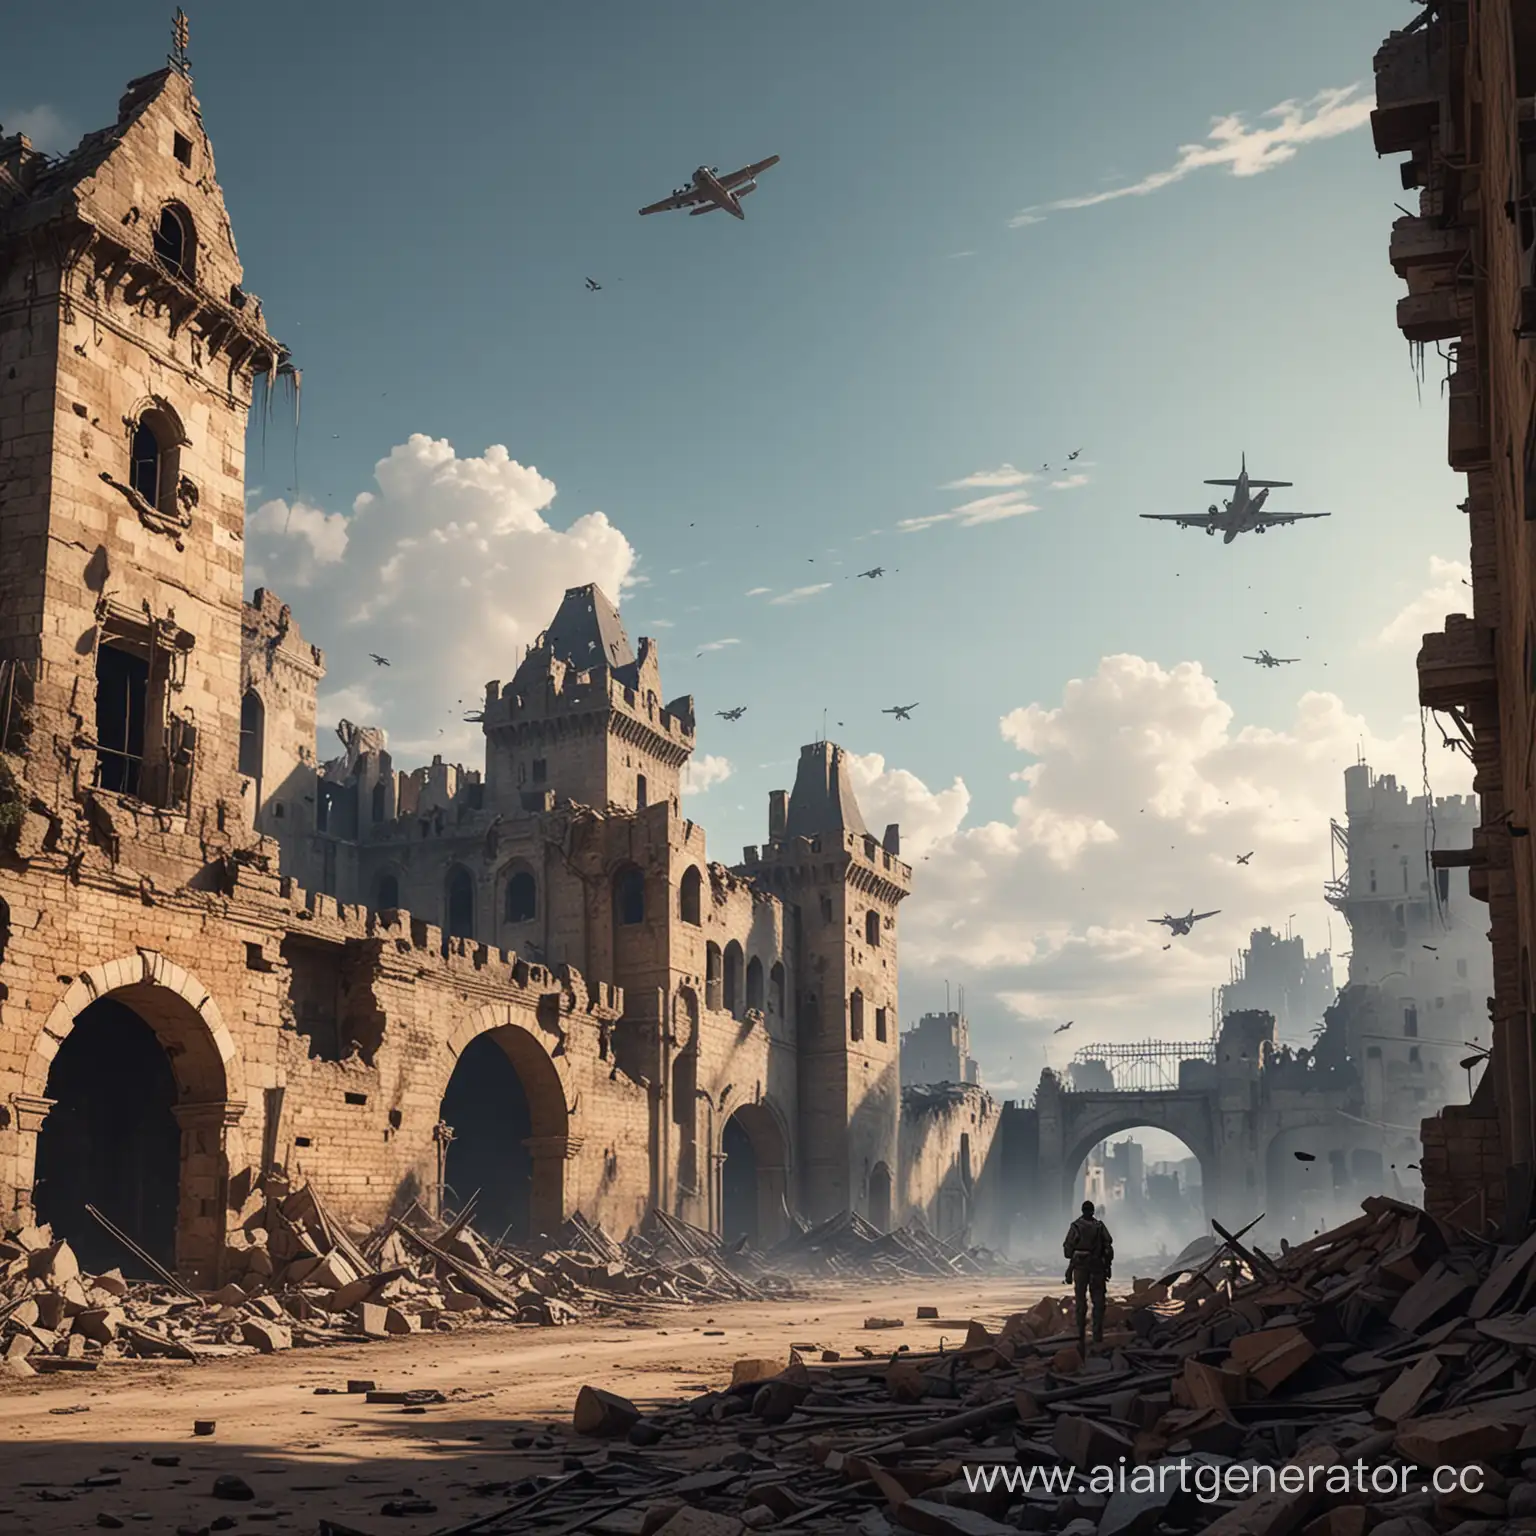 Нарисуй мне военный фон для заставки игры. Без людей, на фоне разрушенного замка. сверху летят бомбардировщики